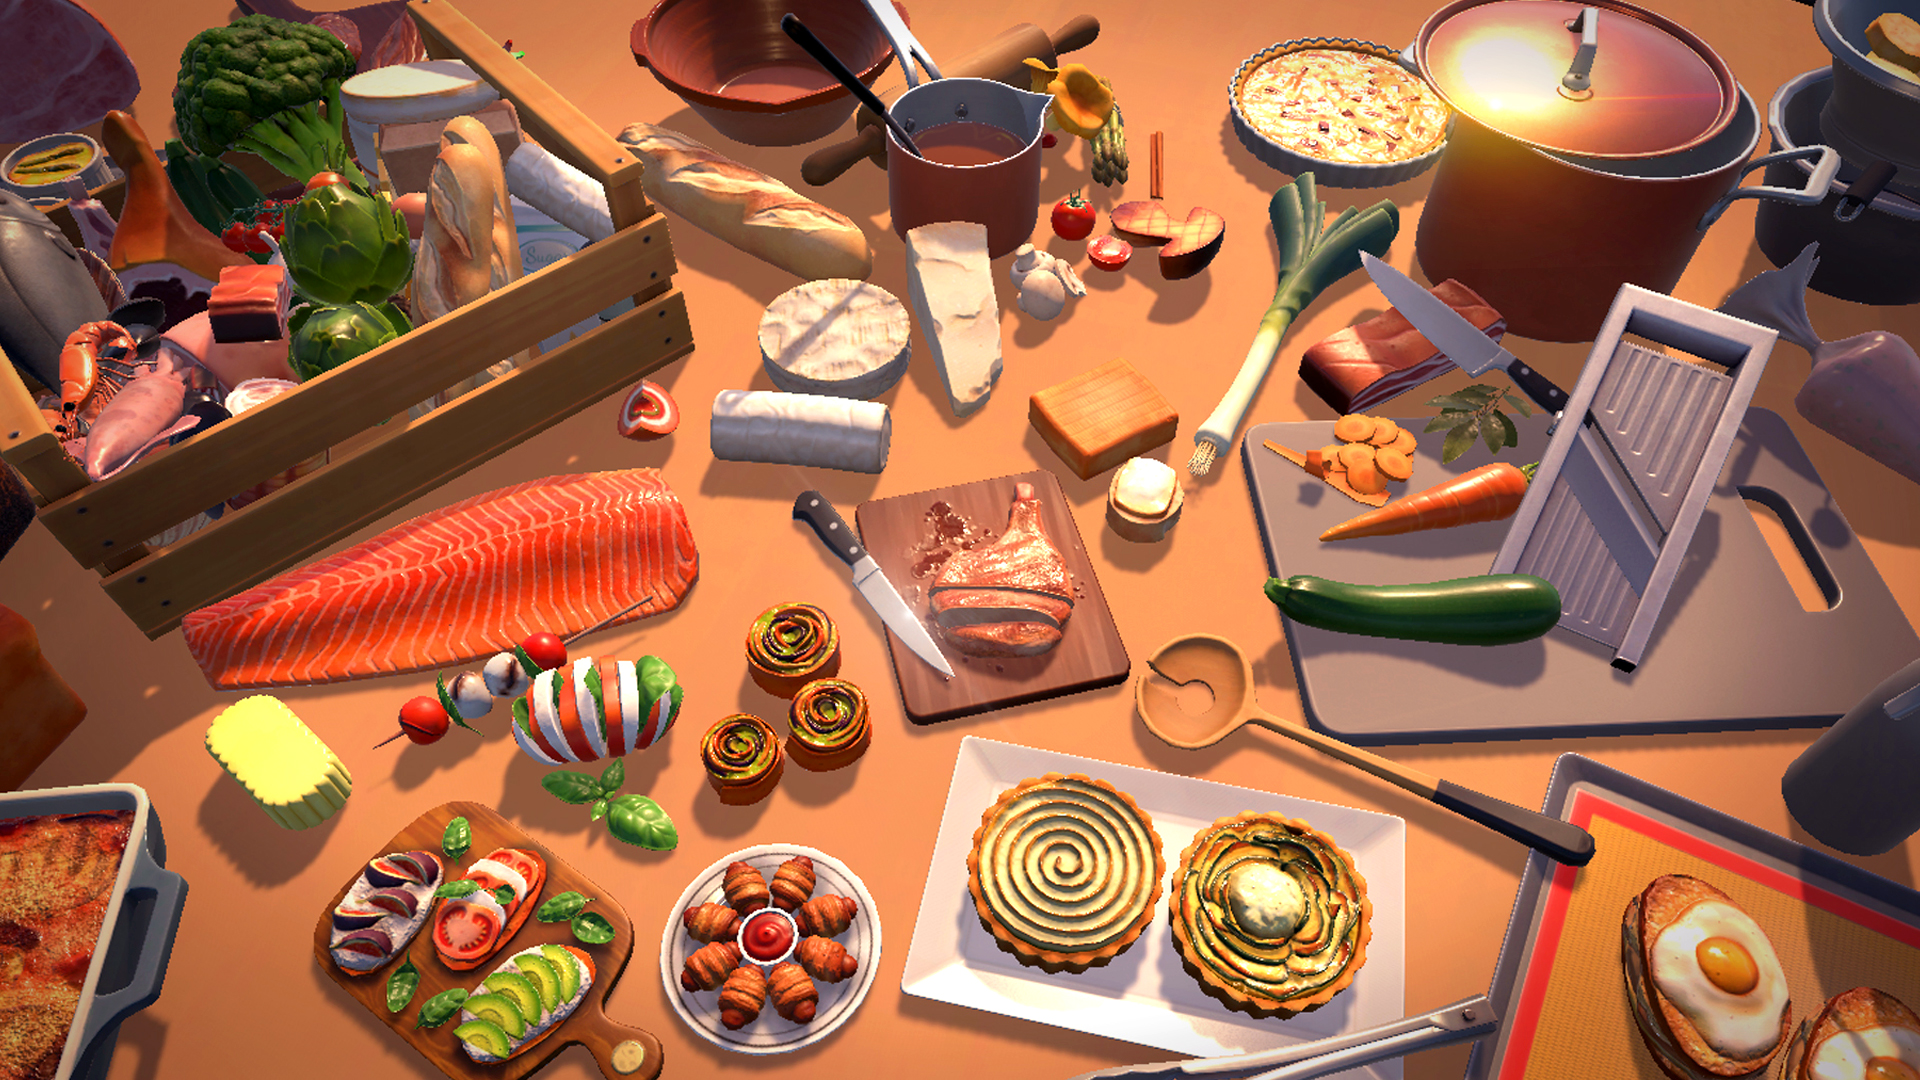 Chef Life: A Restaurant Simulator 5] Al - Edition - Forno [PlayStation